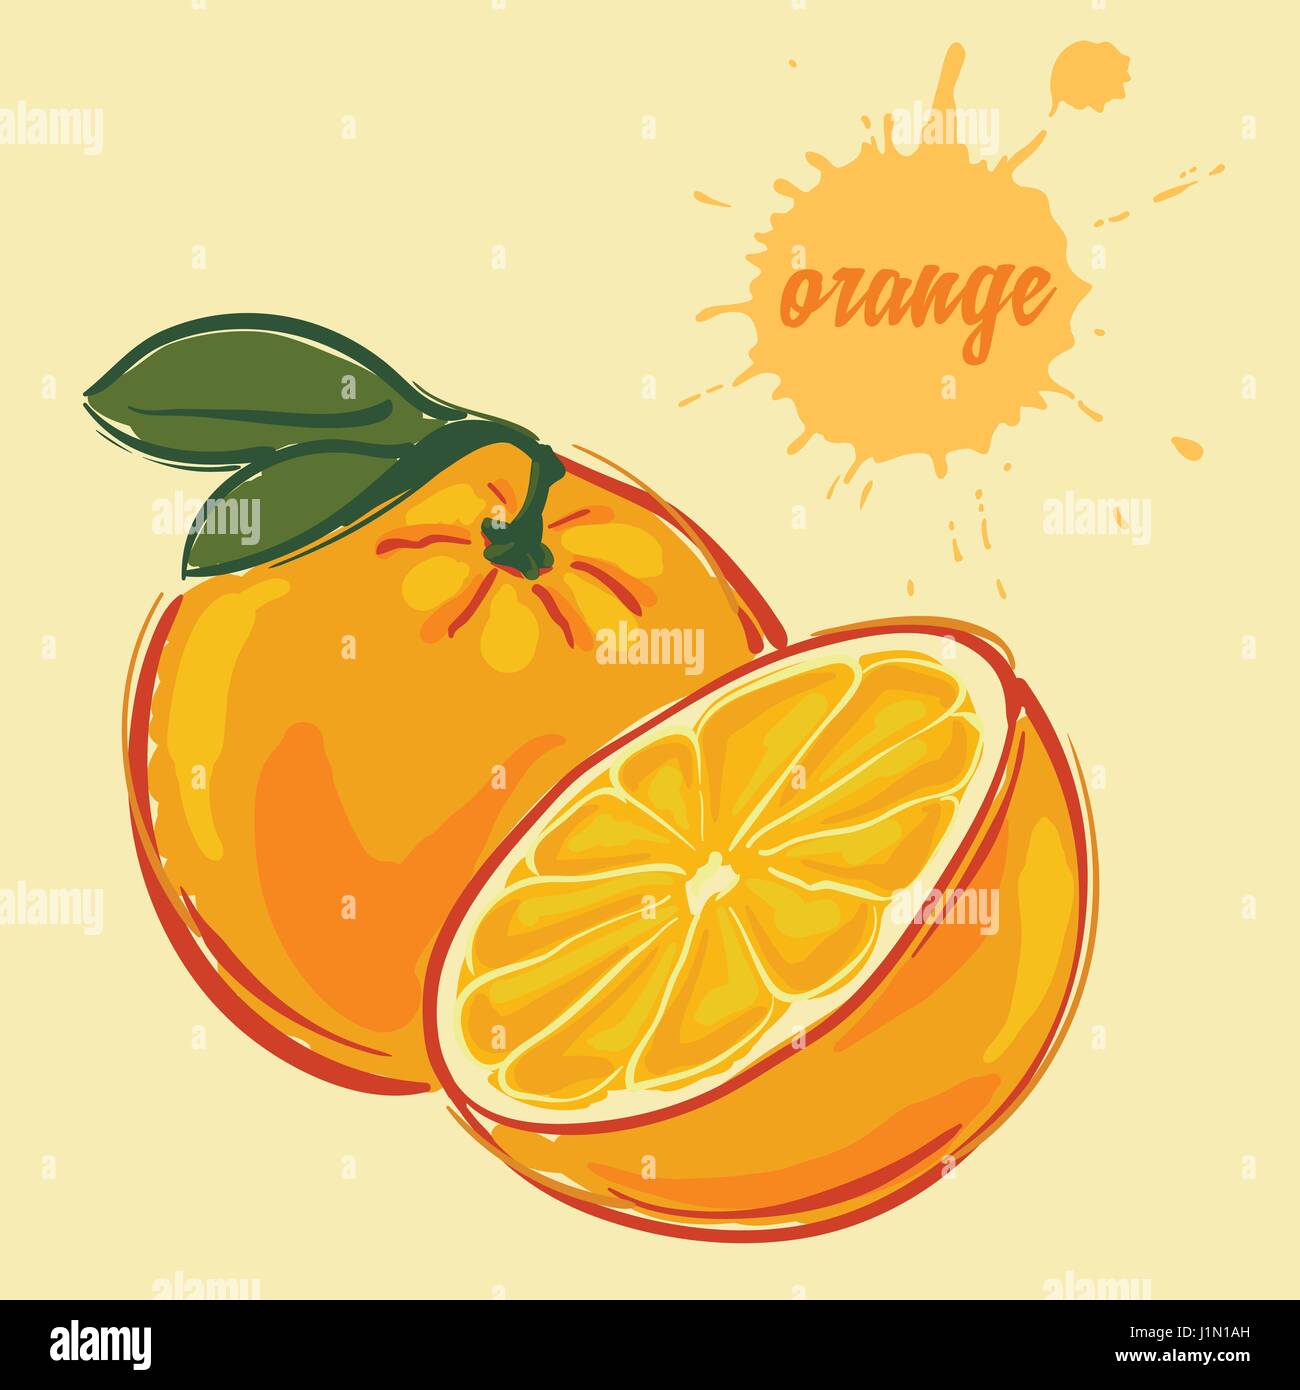 Disegnare a mano di colore arancione Illustrazione Vettoriale